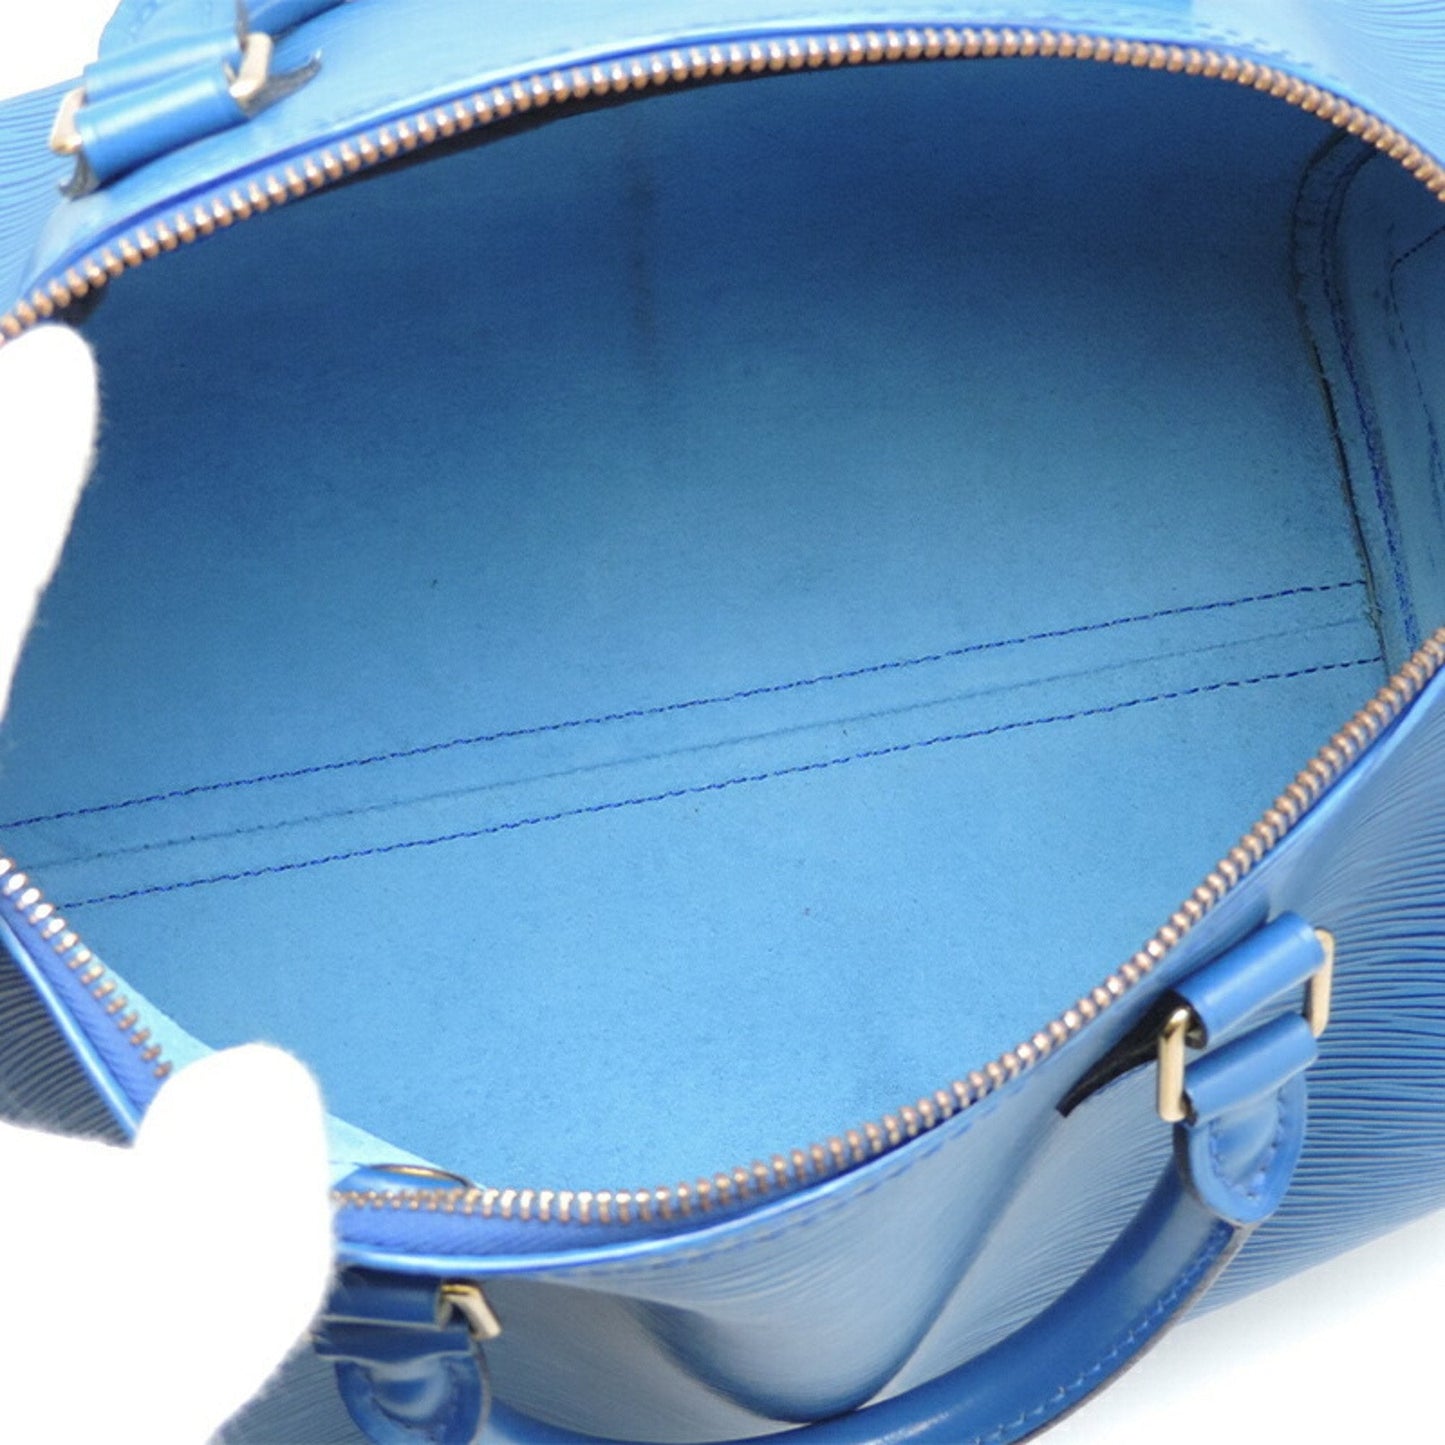 Louis Vuitton Epi Speedy 25 Μπλε Τσάντα